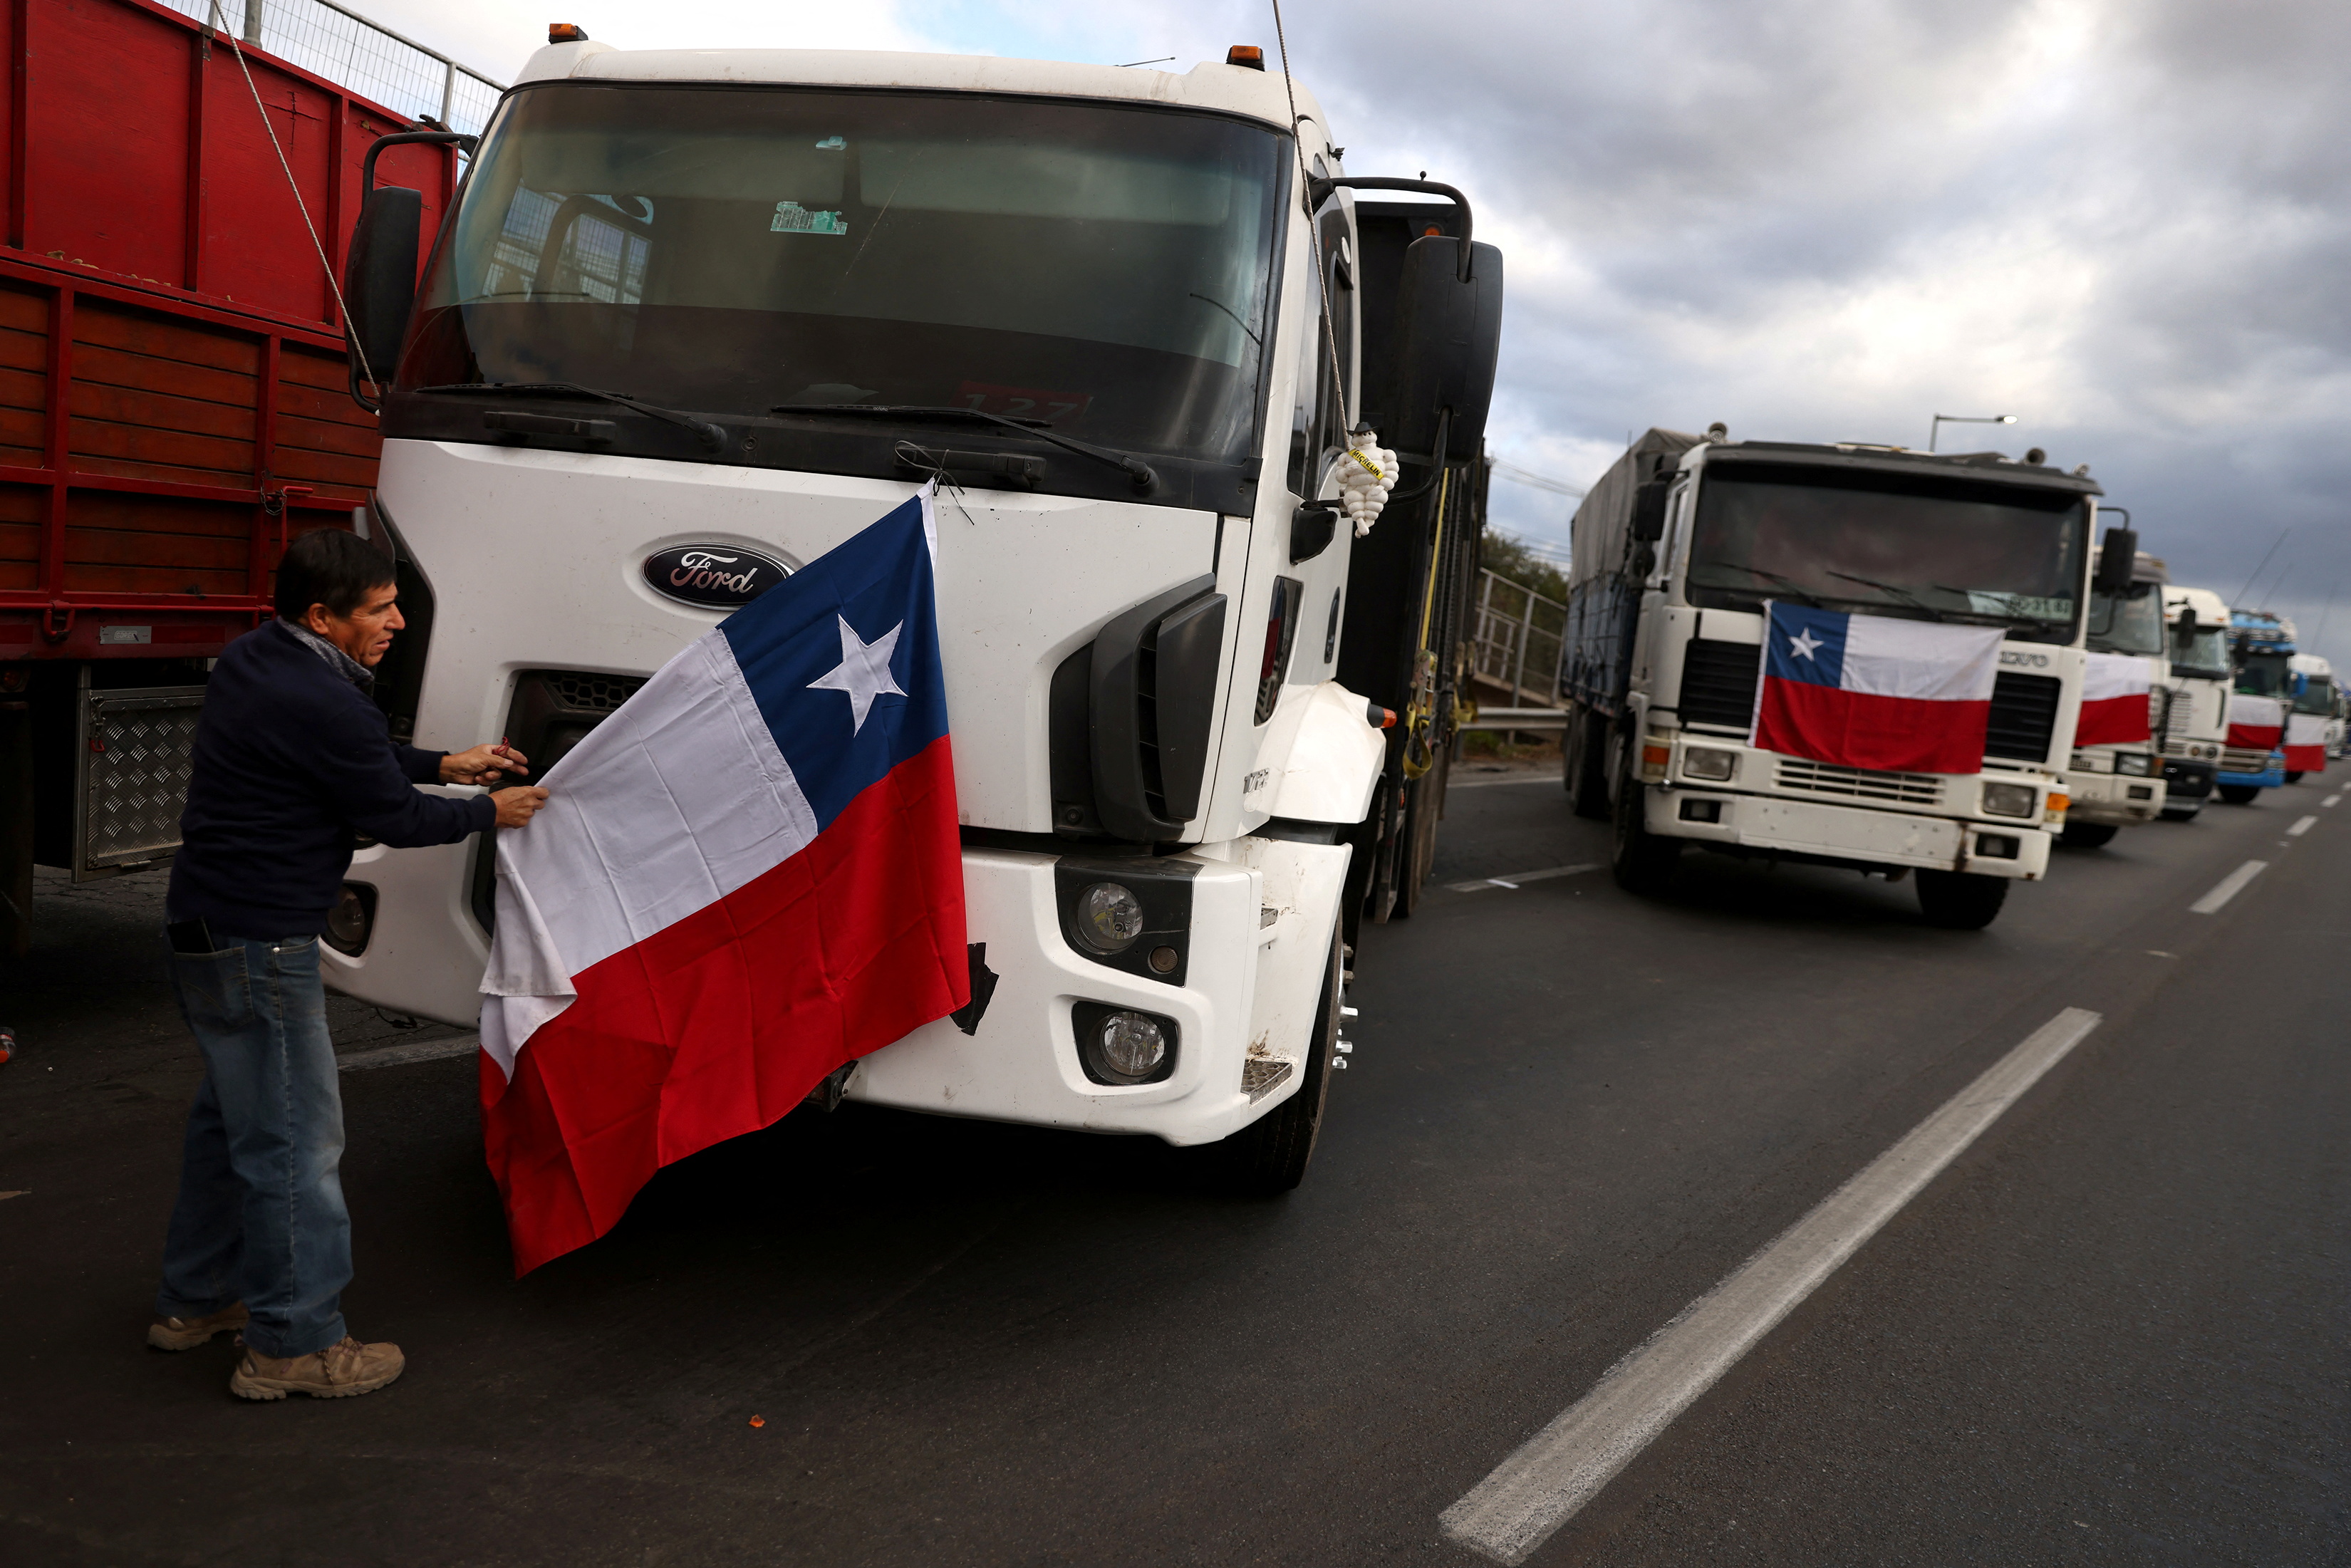 Camiones bloquean una autopista en protesta por la inseguridad en las carreteras (REUTERS/Ivan Alvarado)